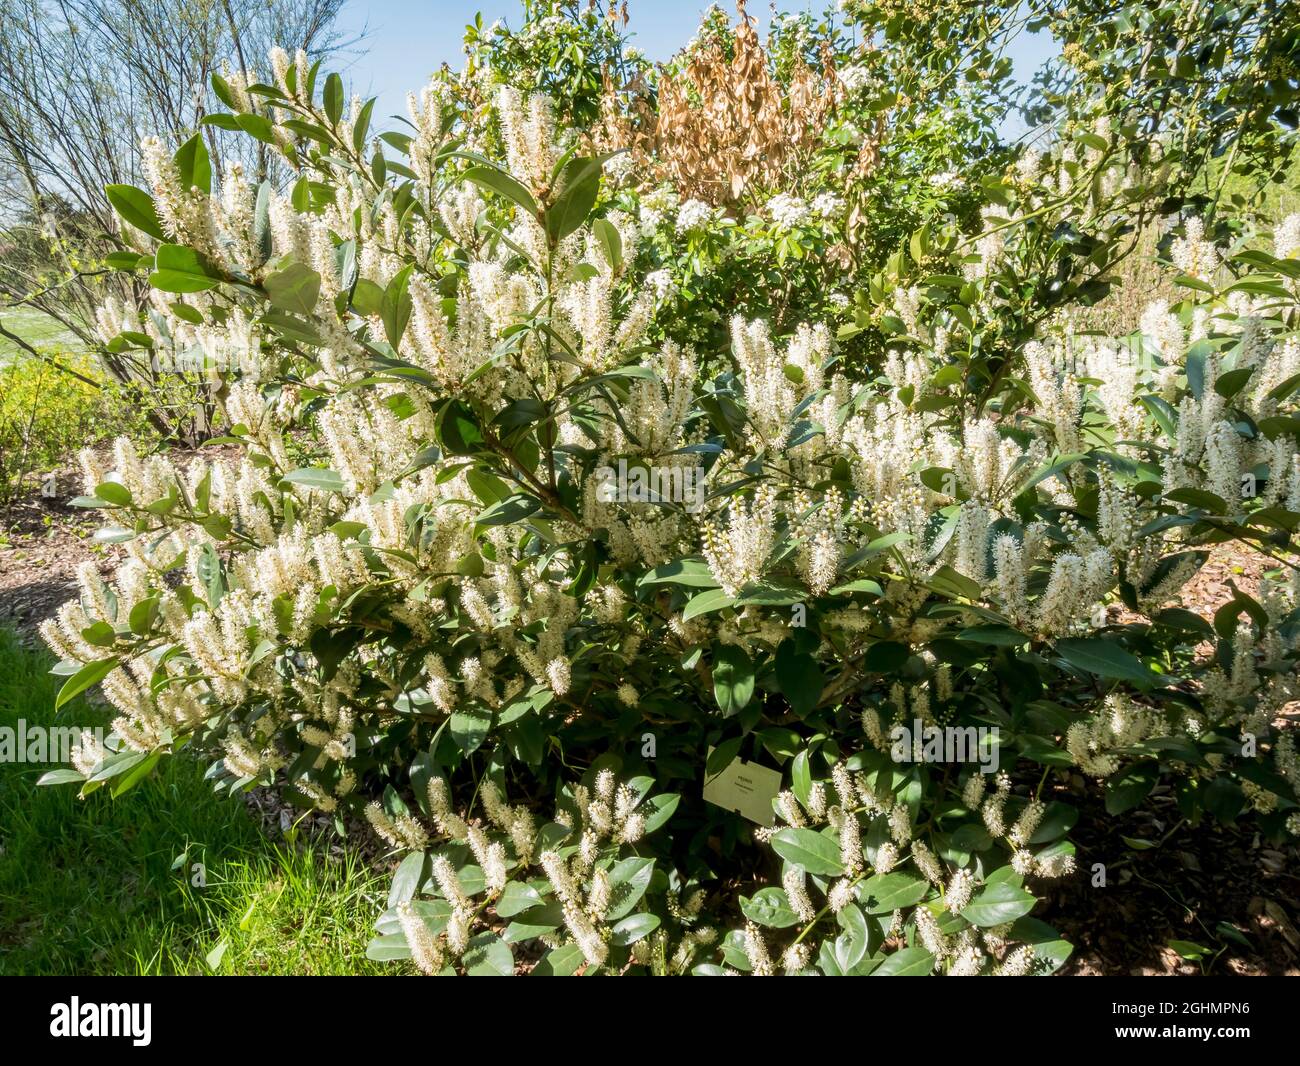 Prunus laurocerasus 'Nana' Stock Photo